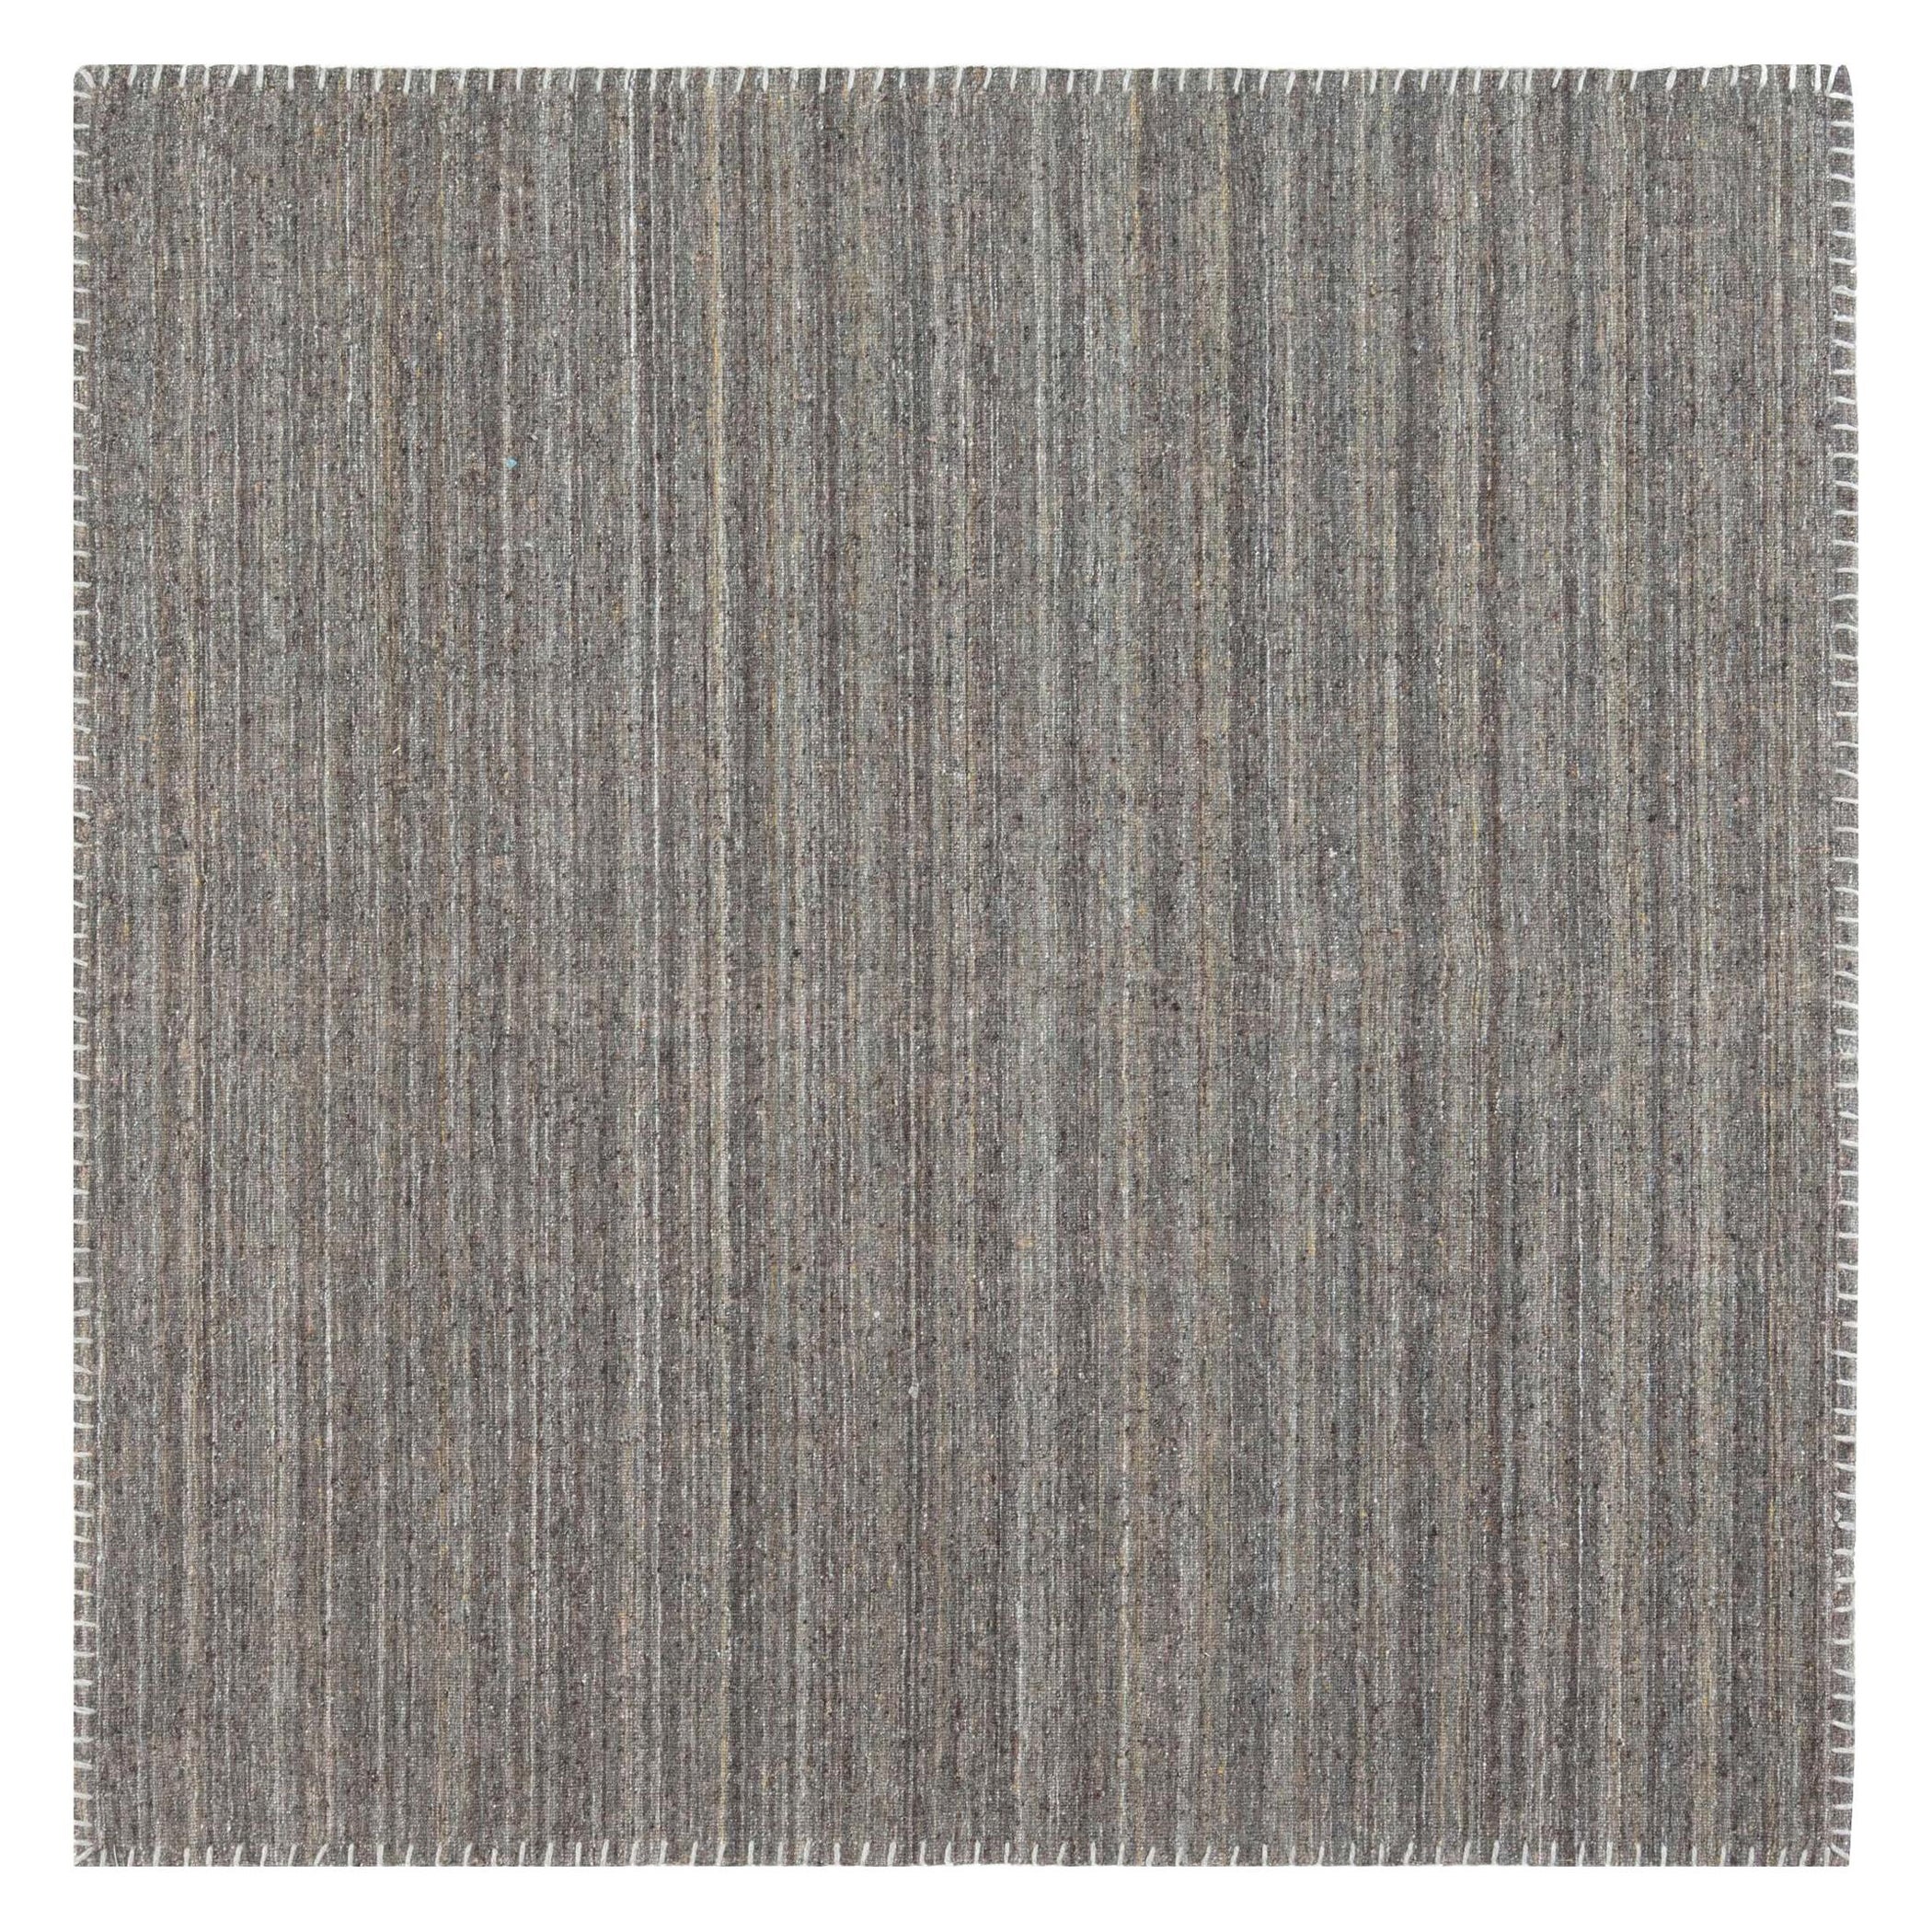 Moderner Bauer-Kollektion-Teppich mit Muster-Less in Grau und Braun von Doris Leslie Blau